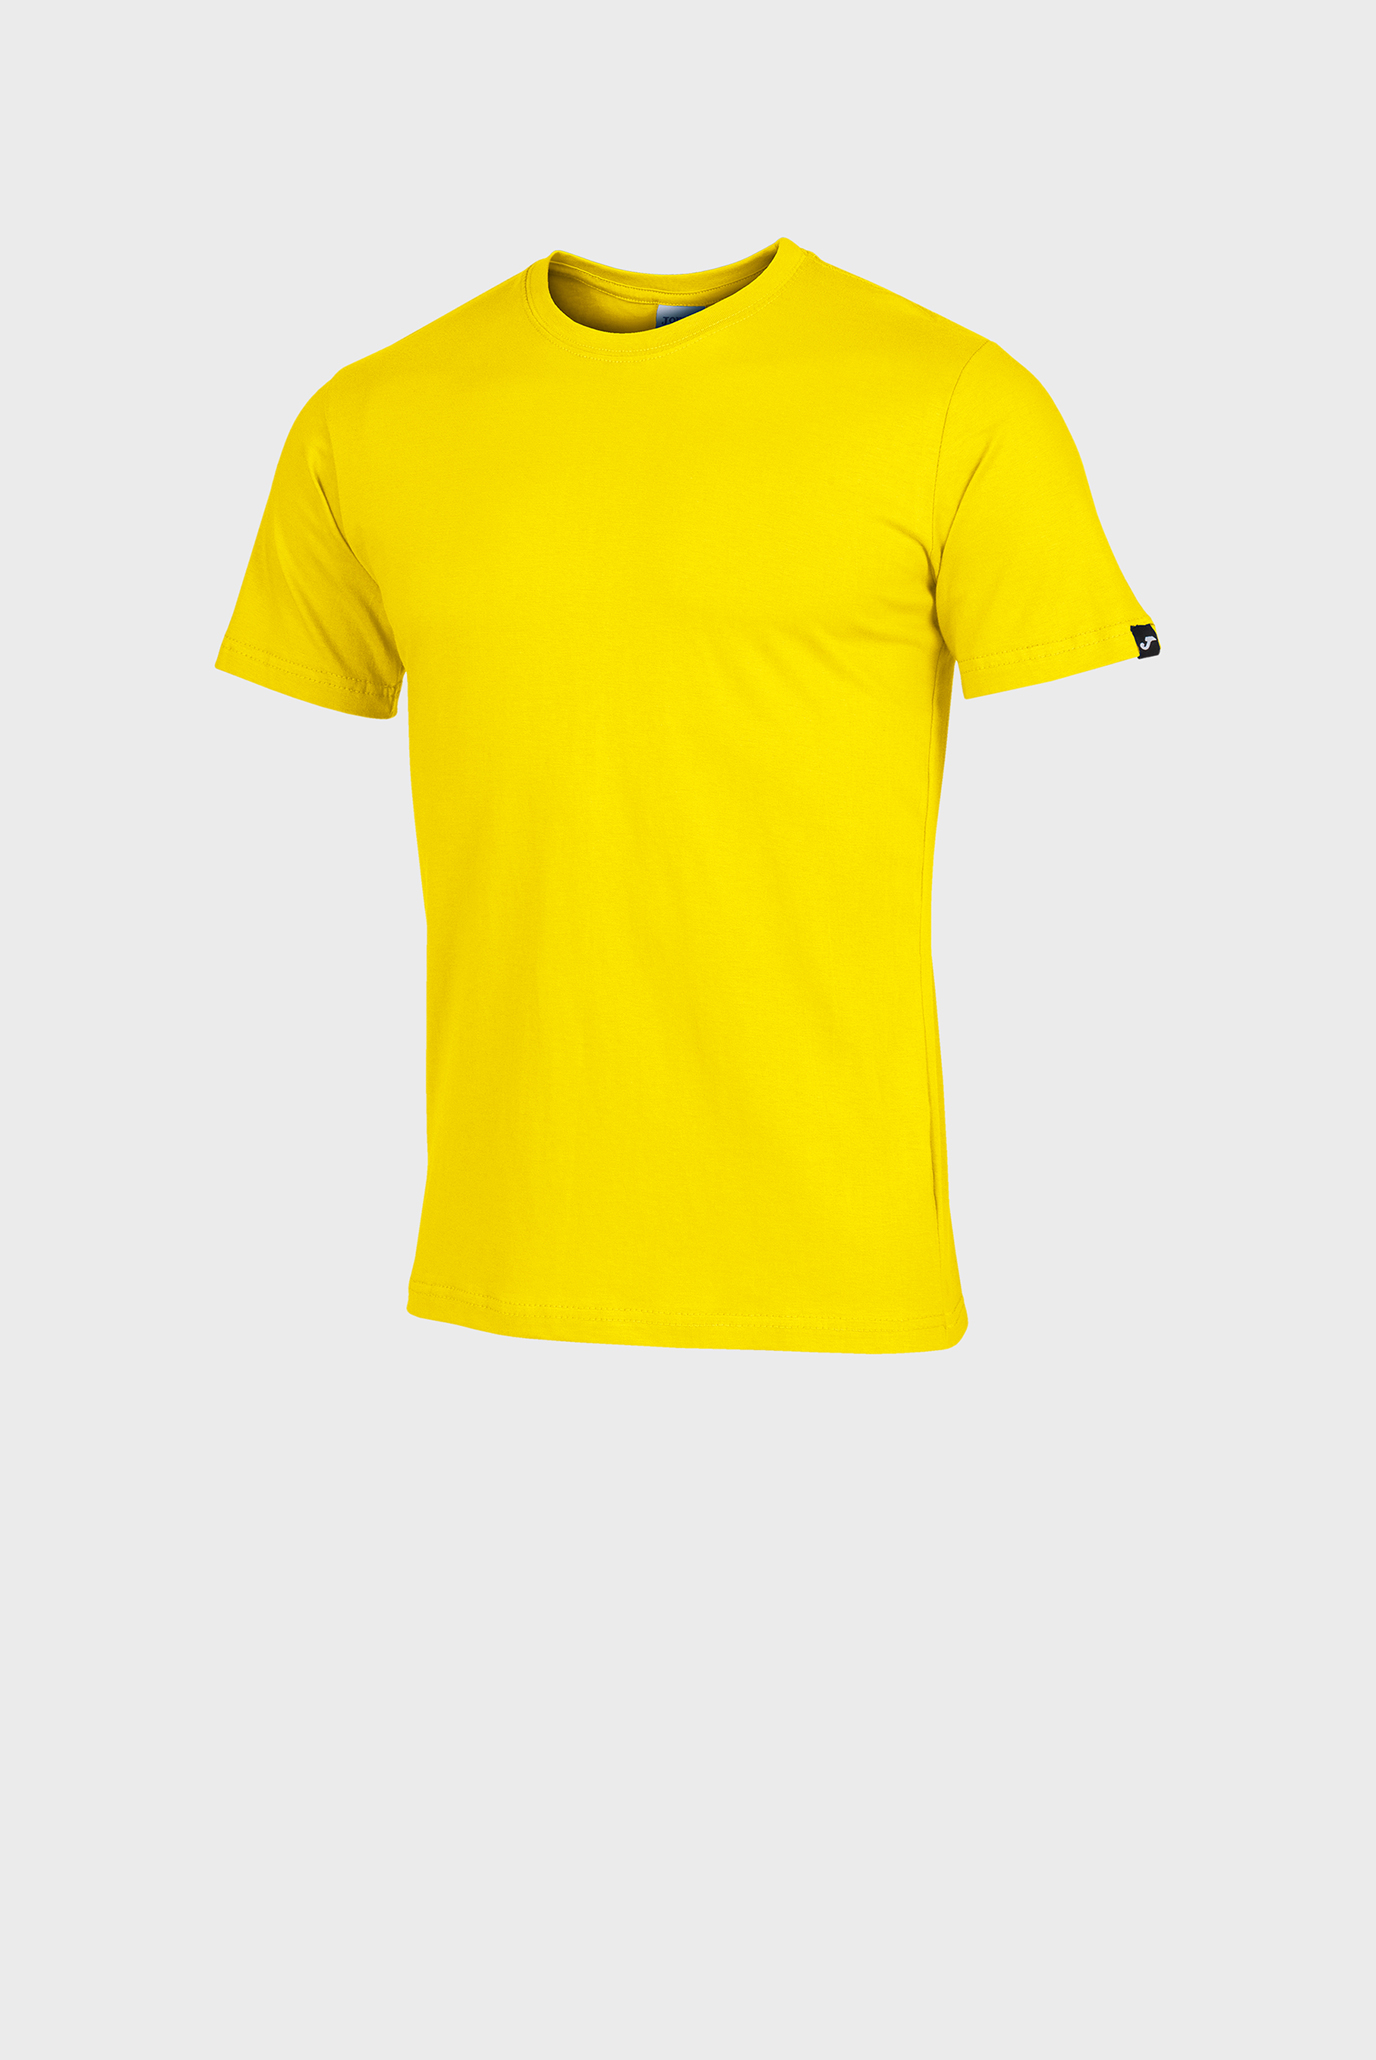 Детская желтая футболка 1